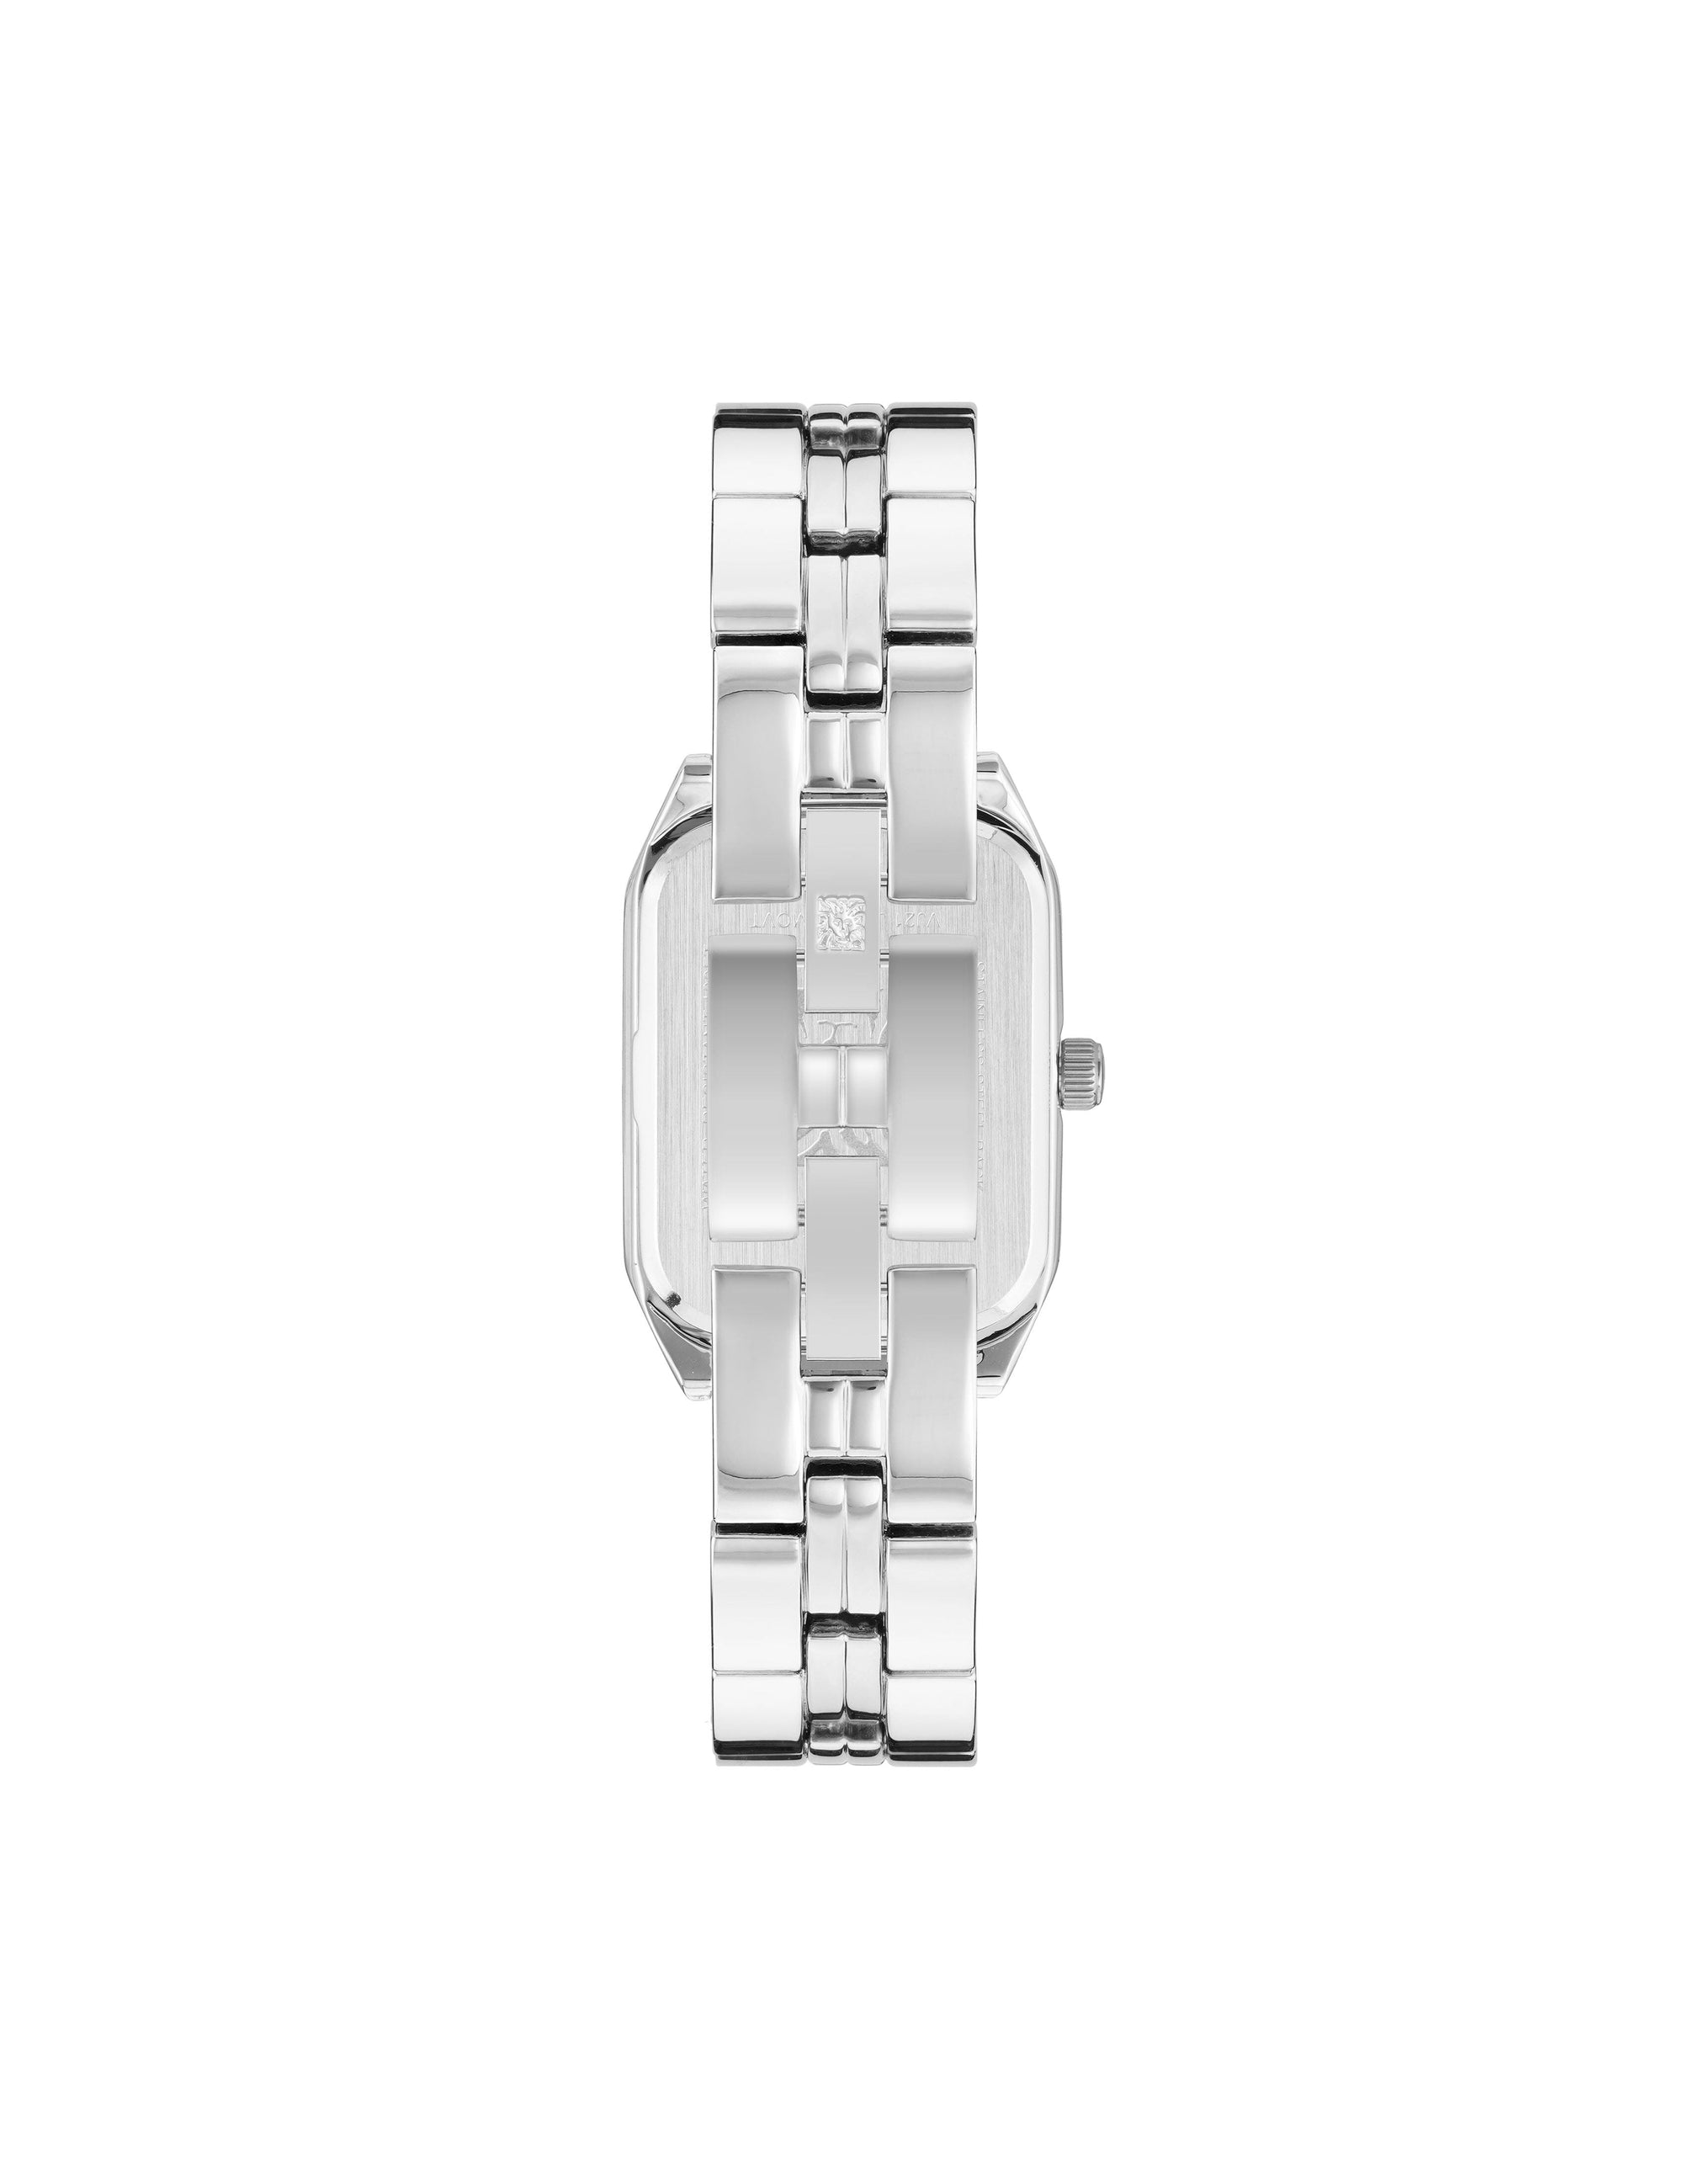 Octagonal Shaped Metal Bracelet Watch